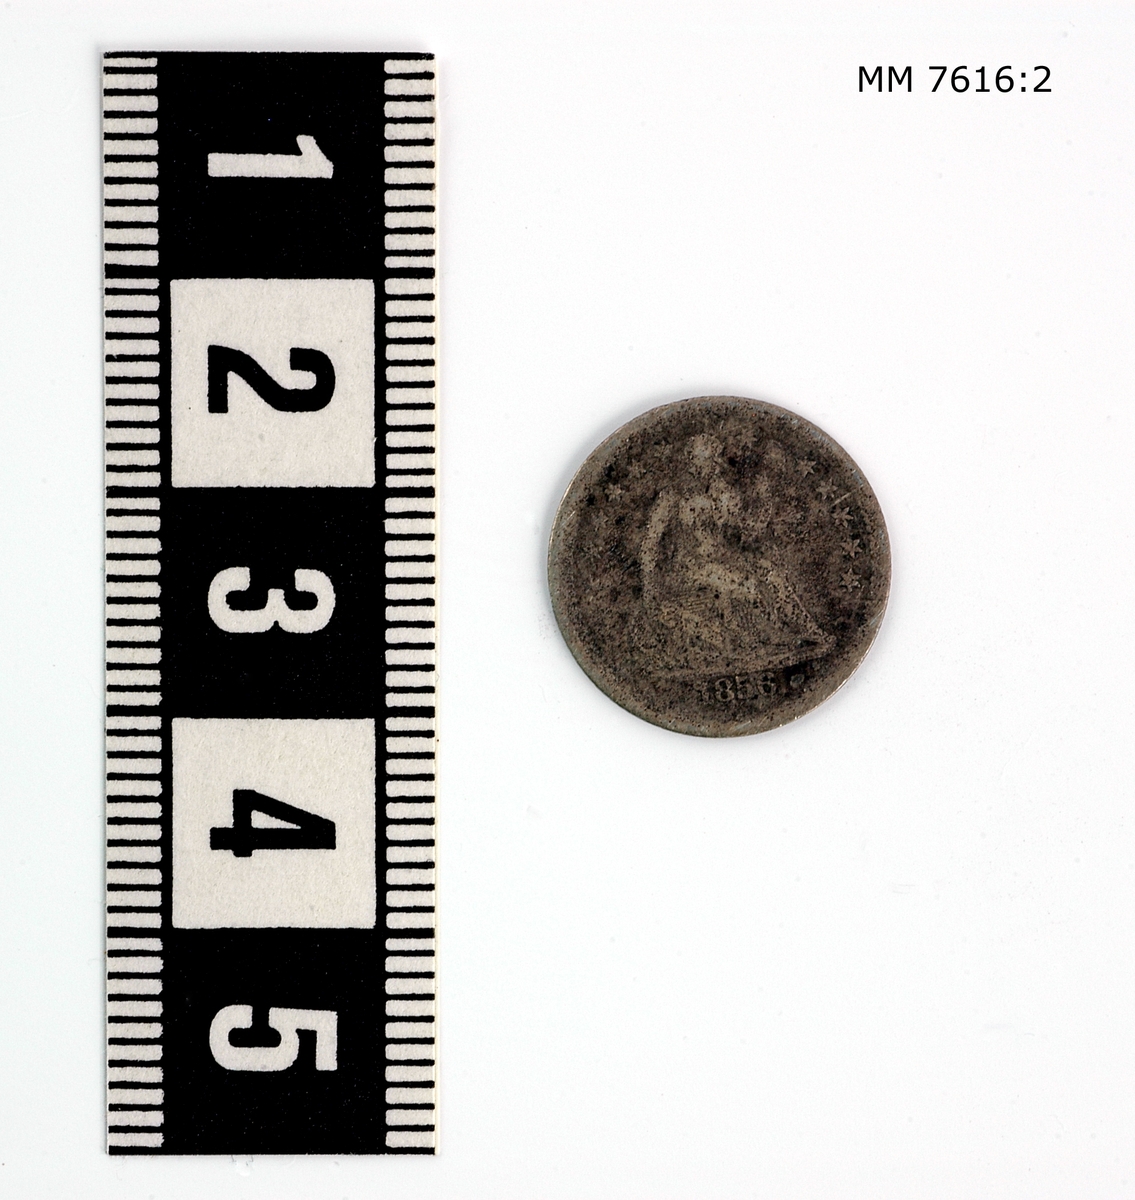 Mynt av silver, halfdime amerikanskt. Präglad på ena sidan: "Halfdime" på andra sidan: figur samt "United states of America 1856".